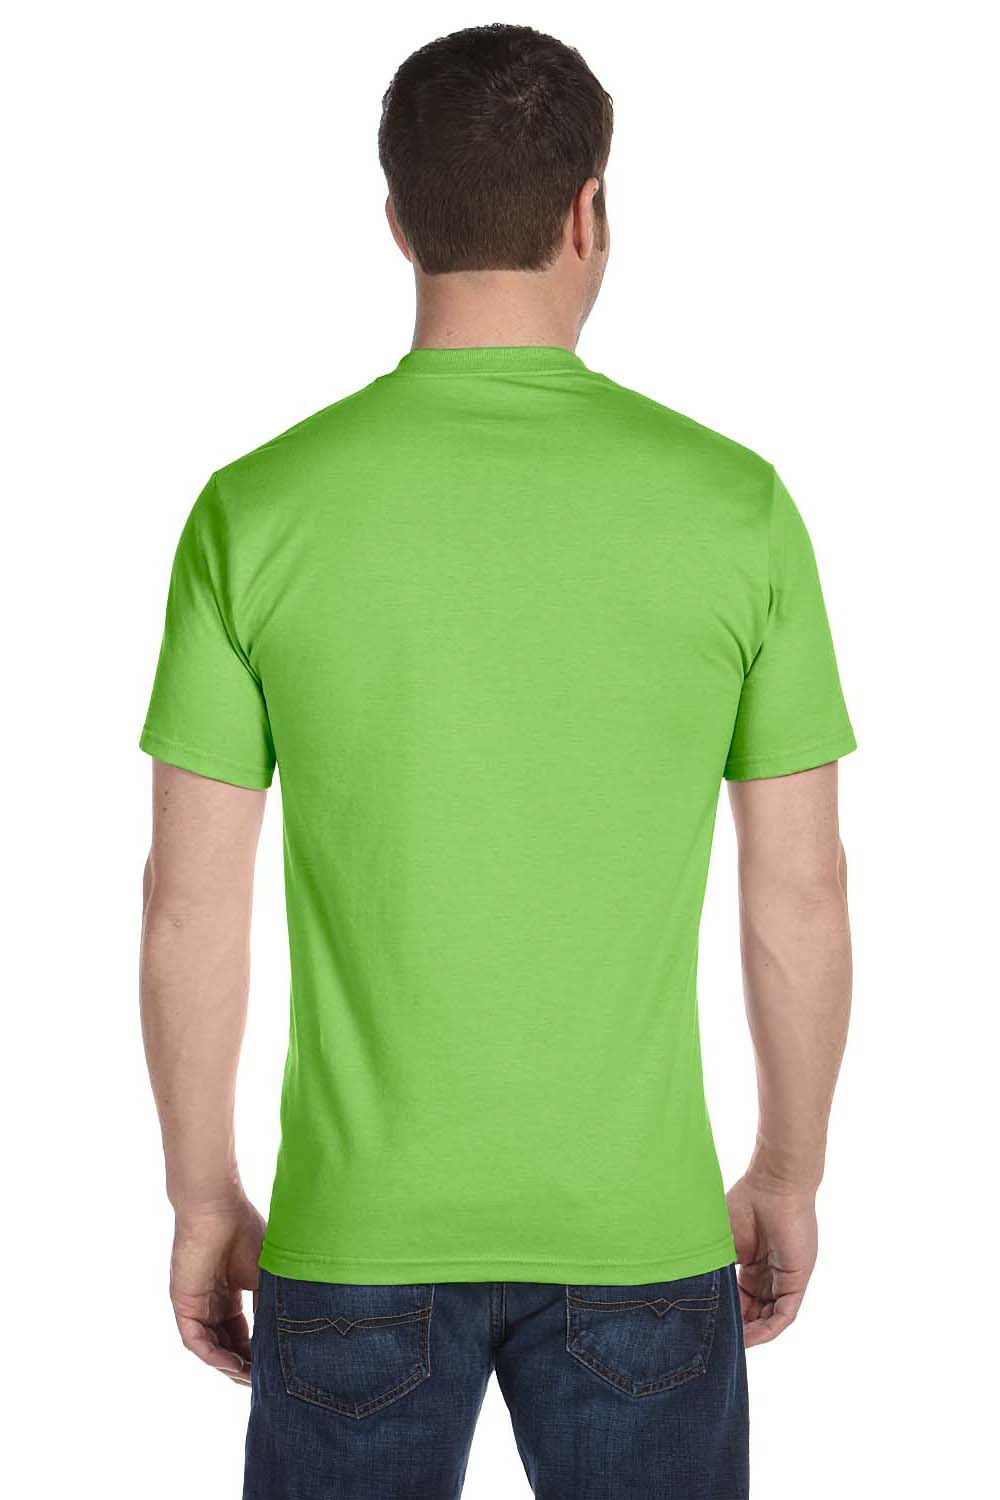 Gildan G800 Mens DryBlend Moisture Wicking Short Sleeve Crewneck T-Shirt Lime Green Back